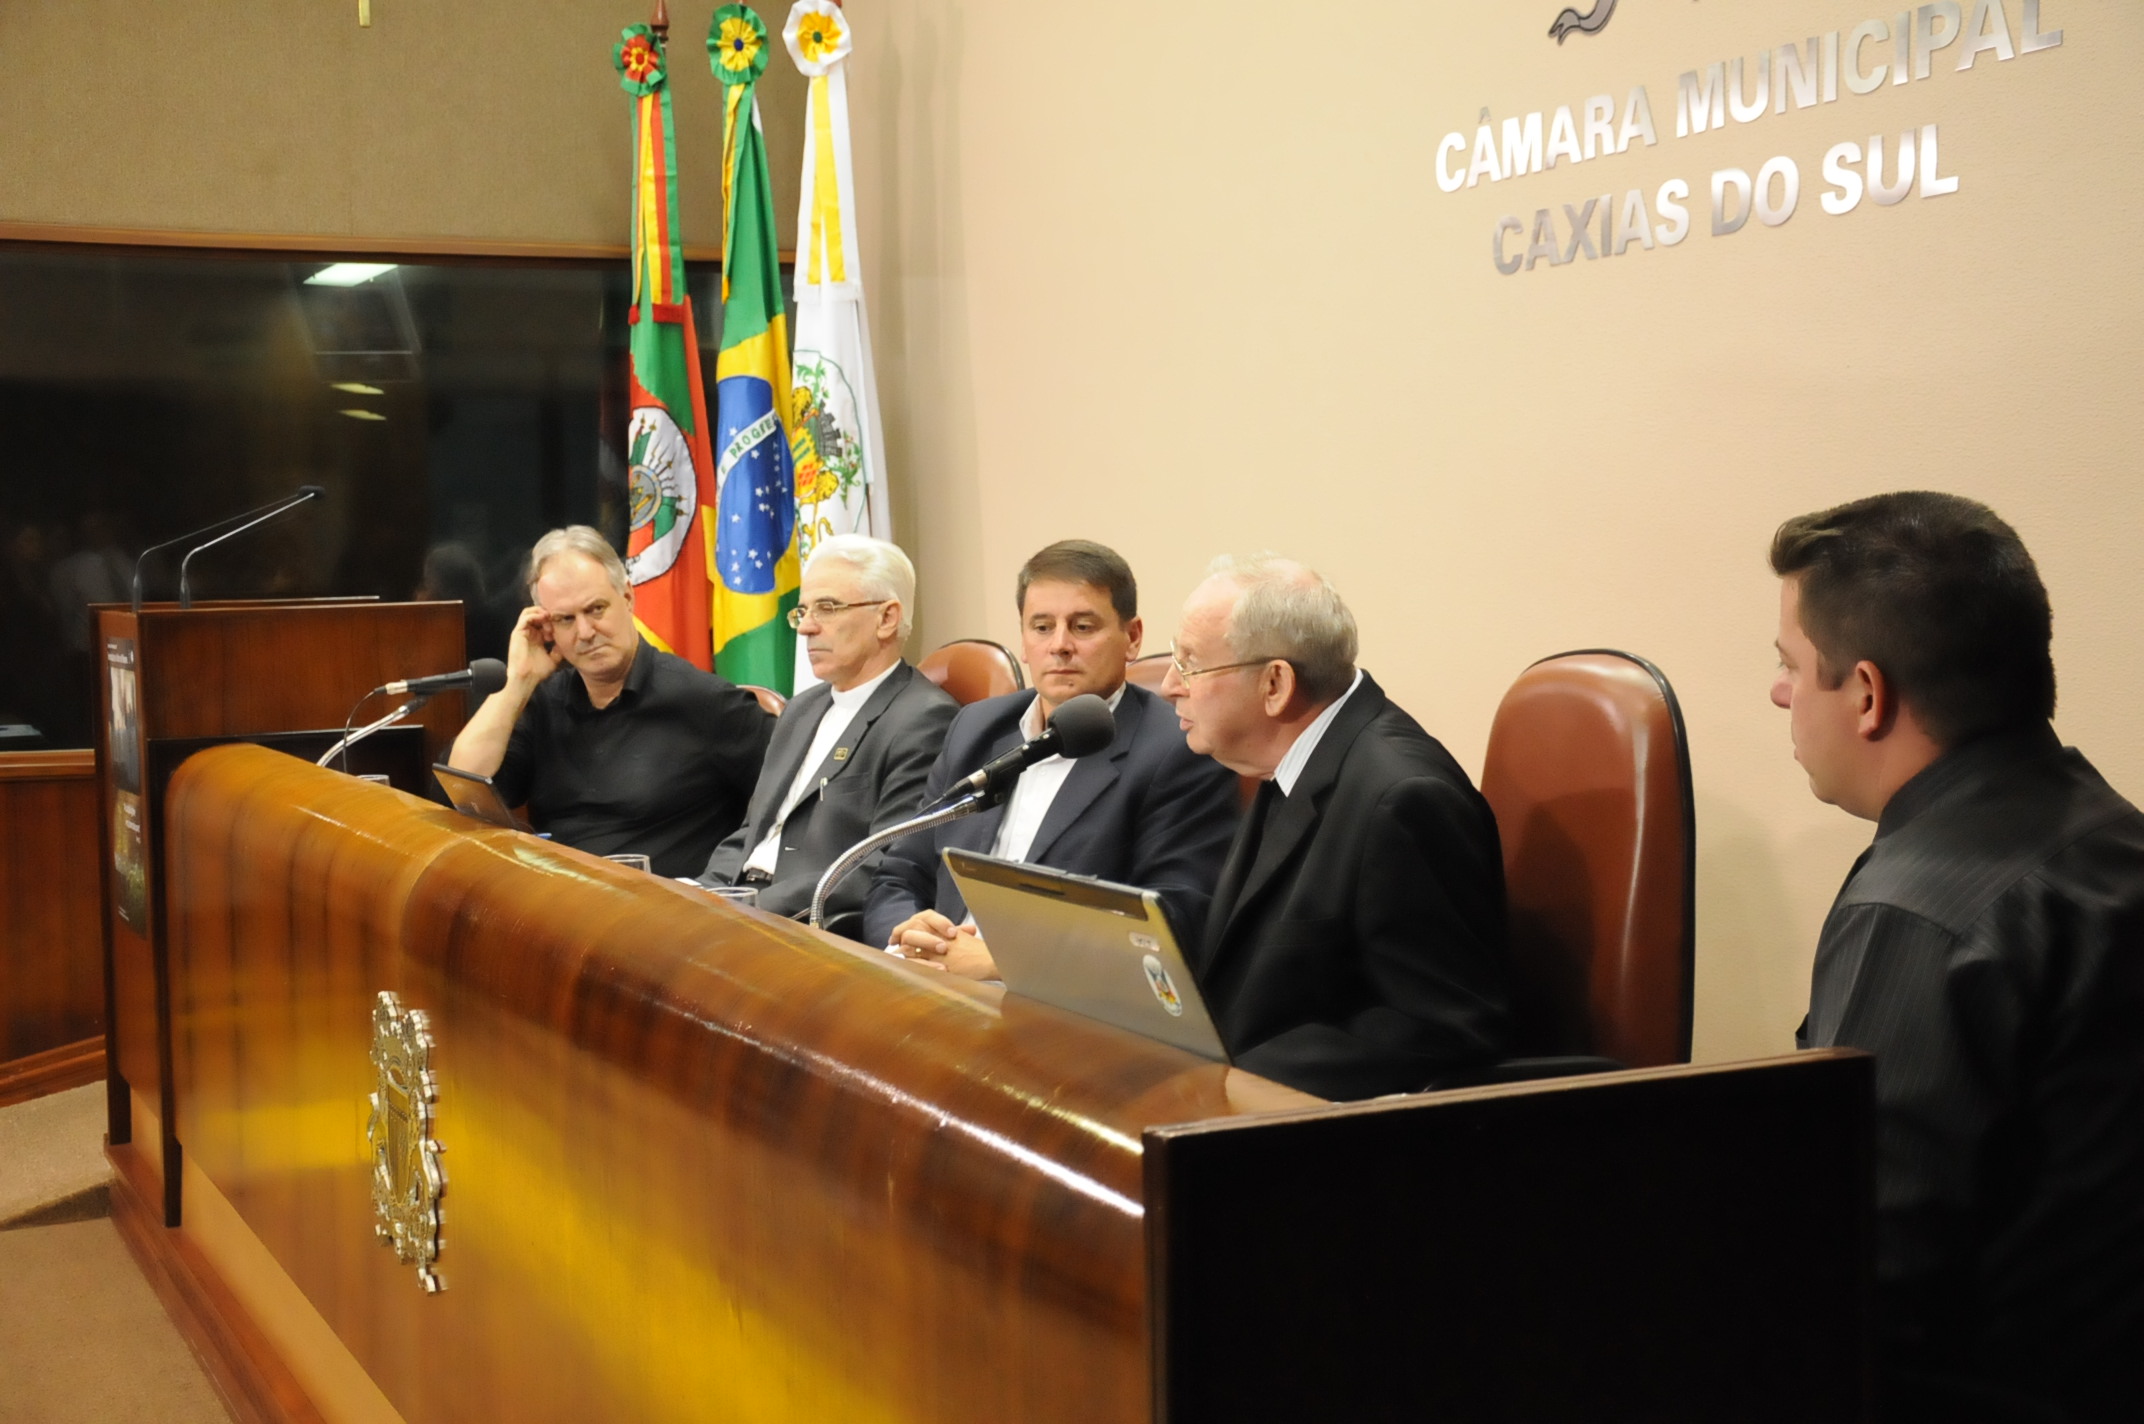 Dom Paulo Moretto divulga a Campanha da Fraternidade 2011 na Câmara